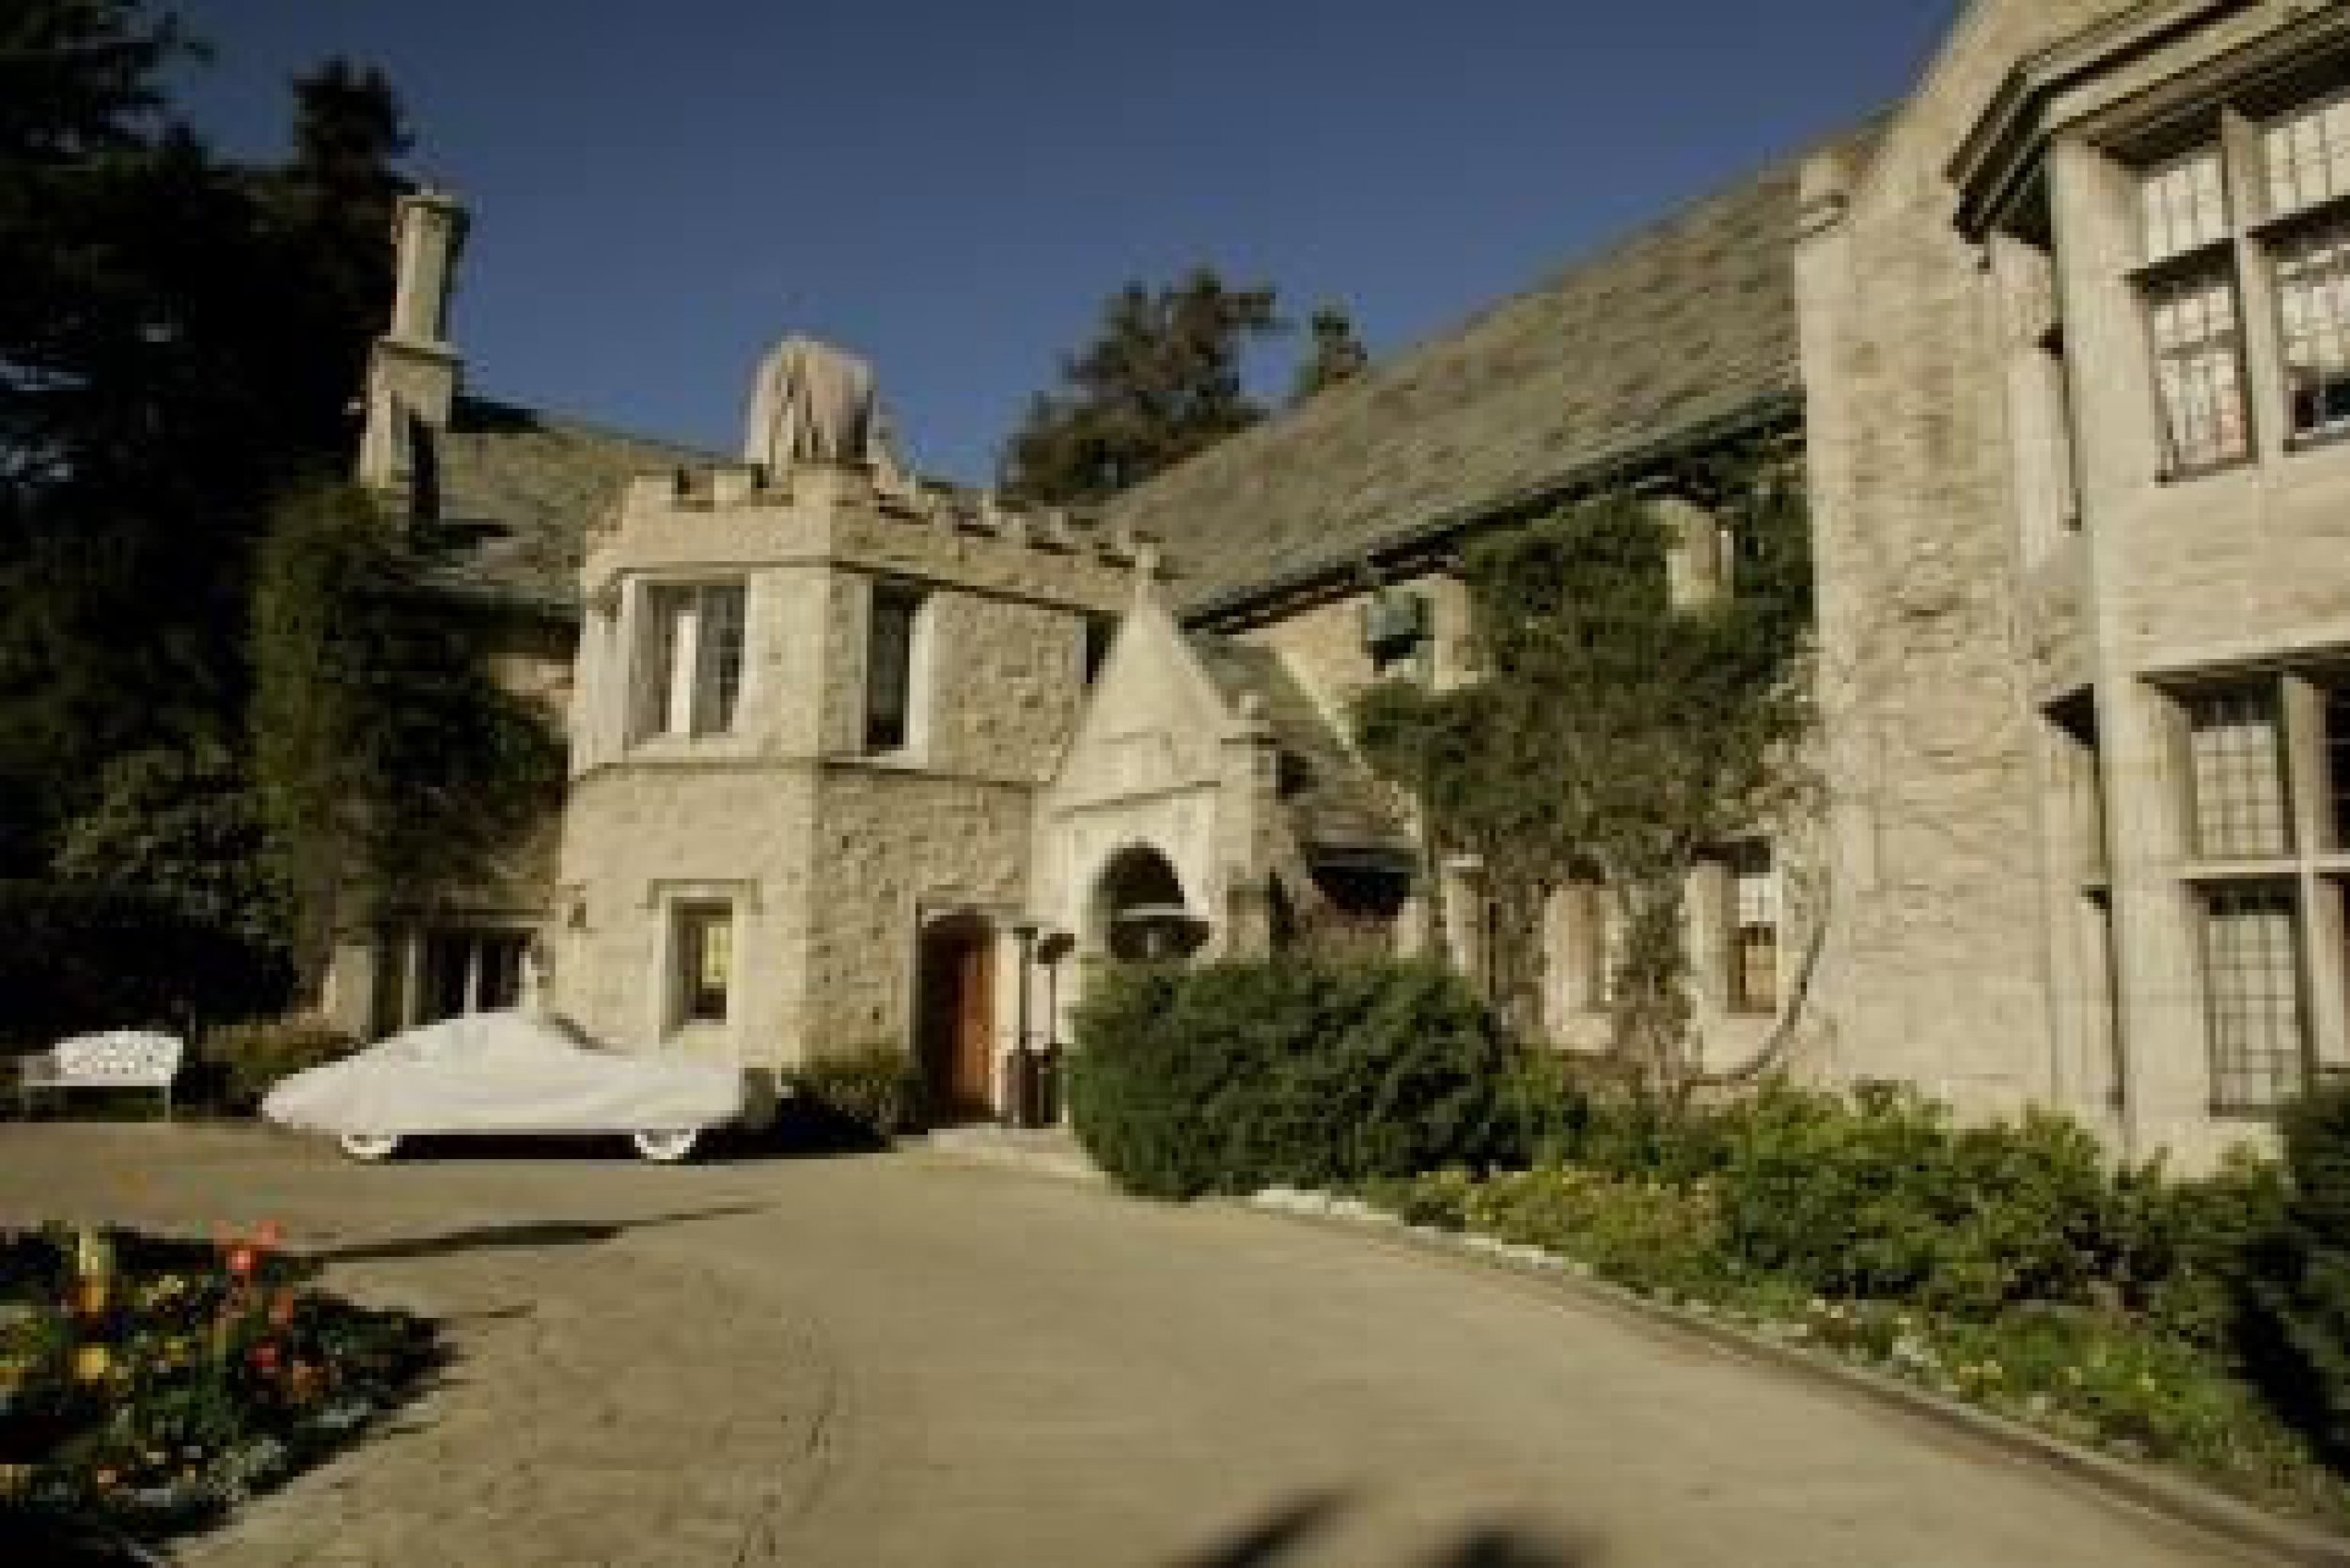 Hugh Hefners Playboy Mansion Sold For 100M